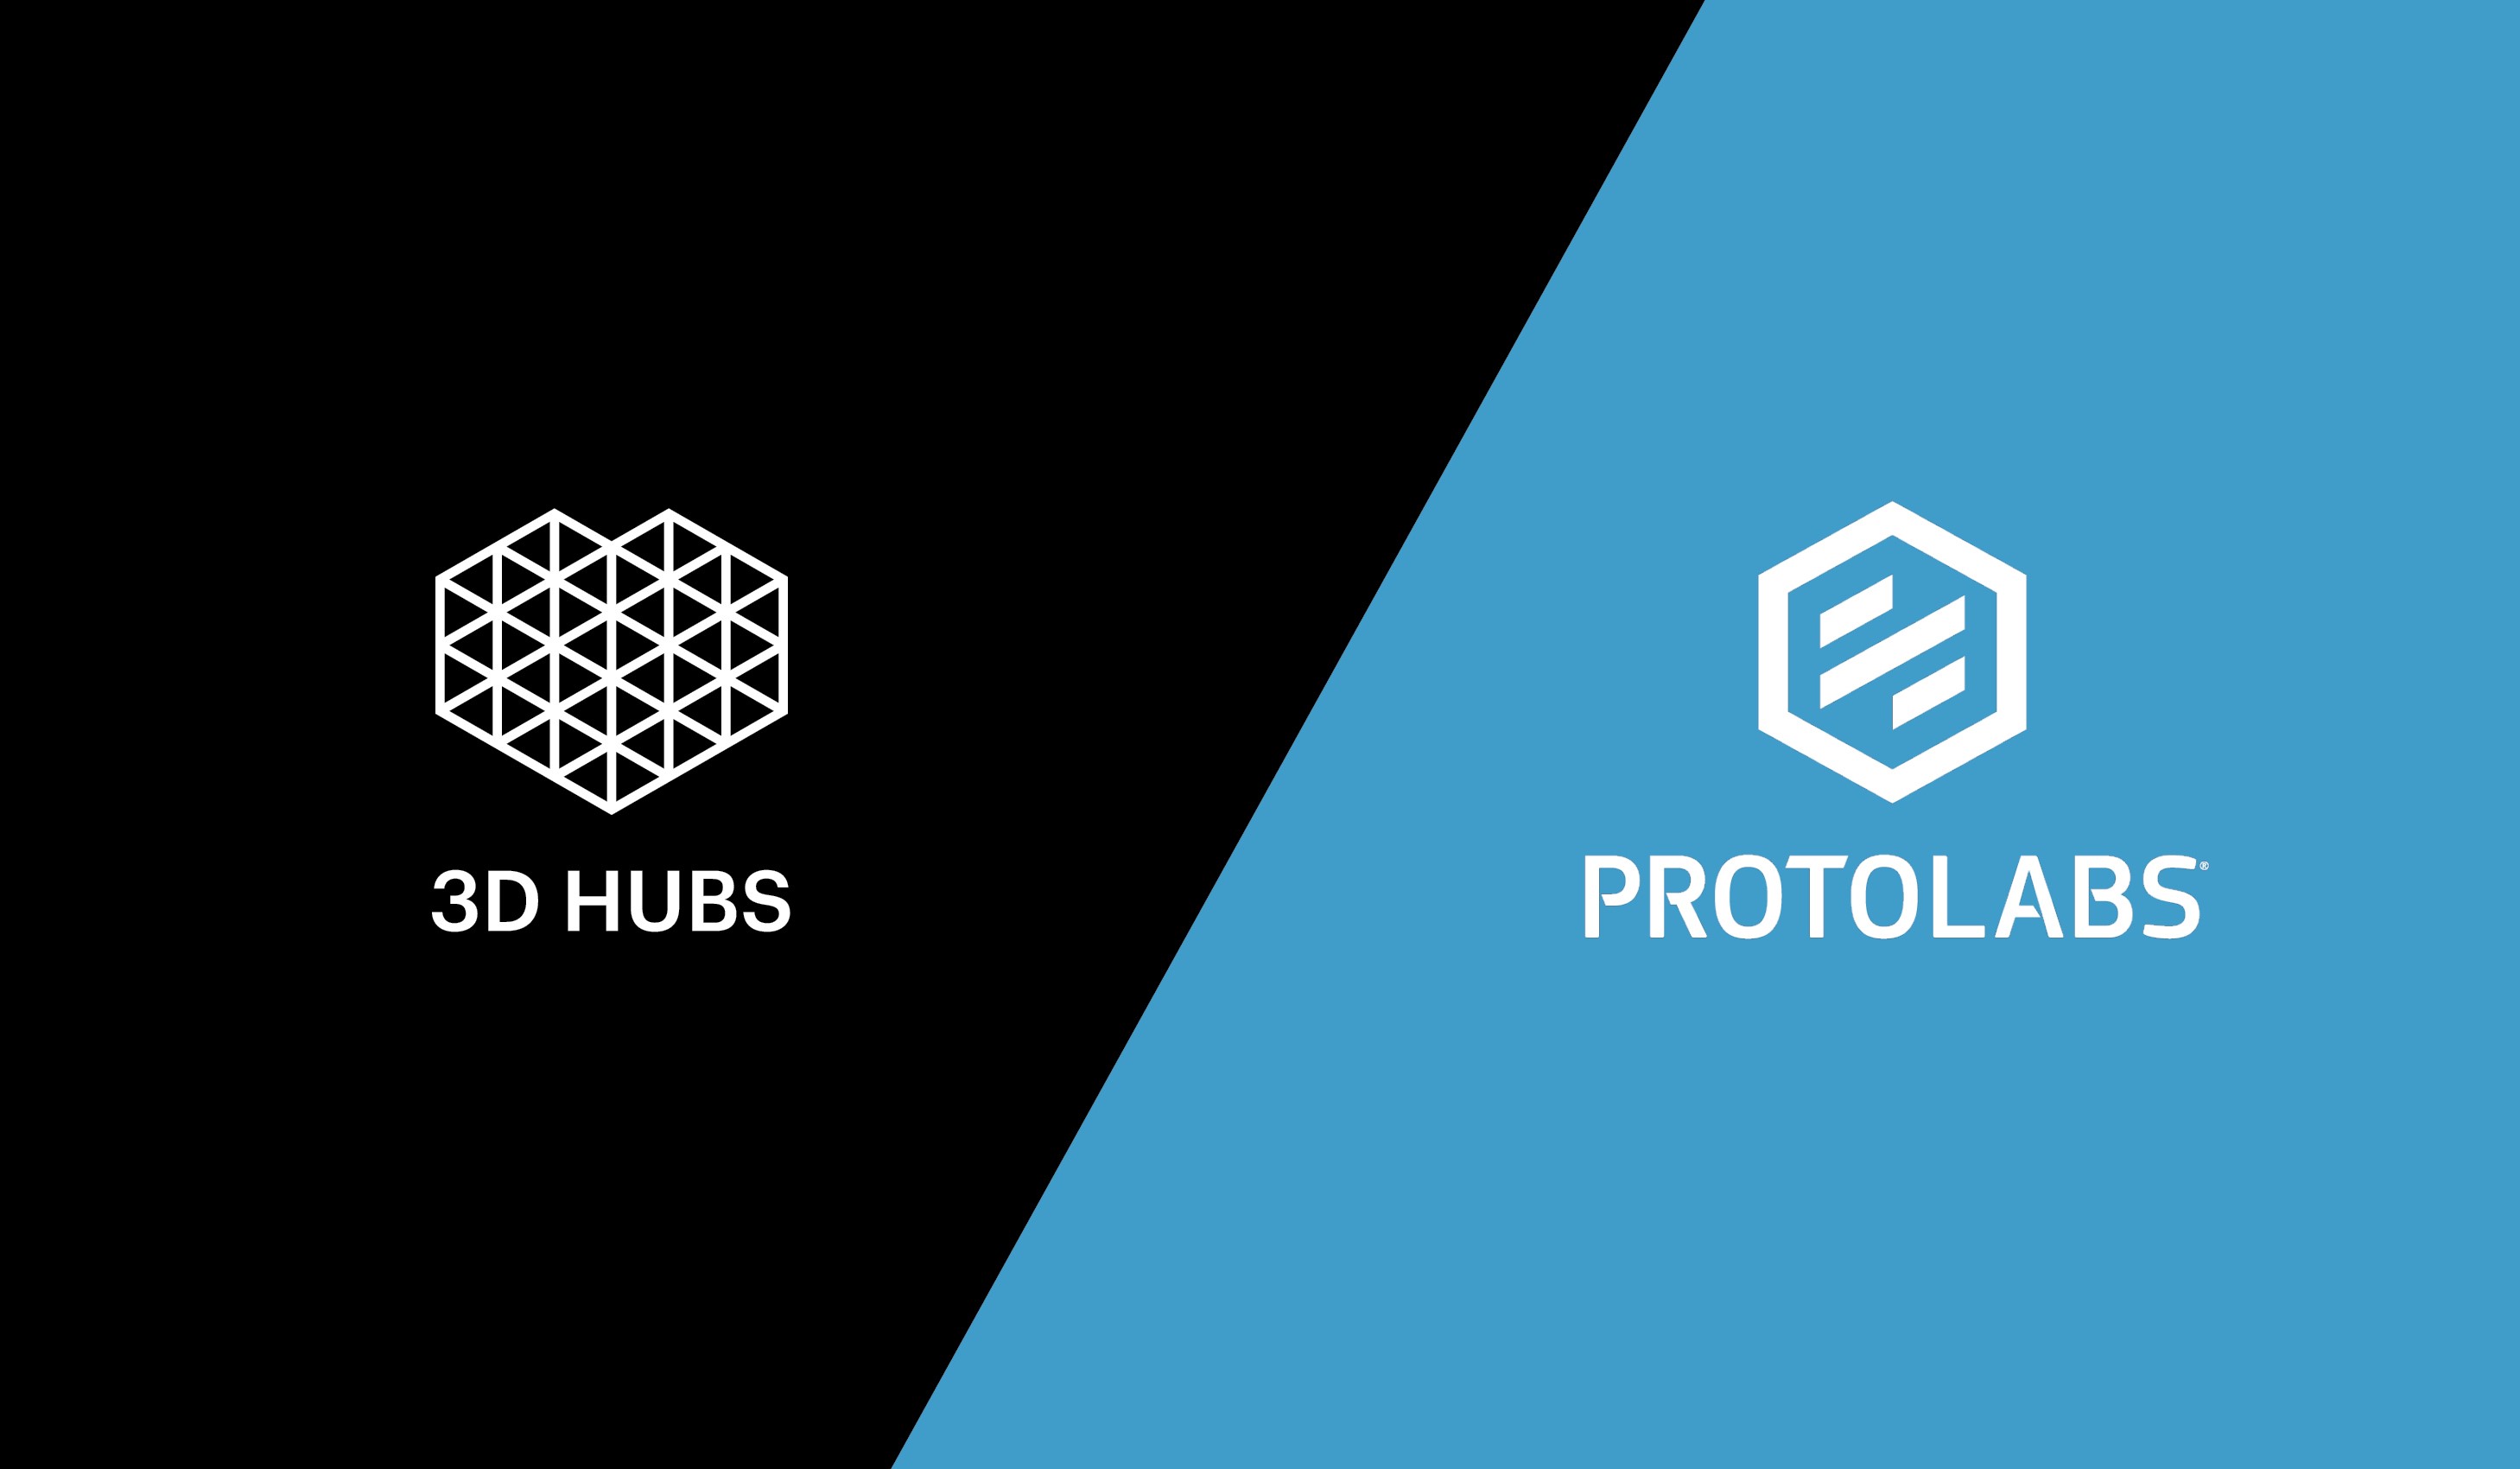 Protolabs conclut un accord pour l'acquisition de 3D Hubs, et crée ainsi l'offre digitale de fabrication de pièces sur mesure la plus large au monde